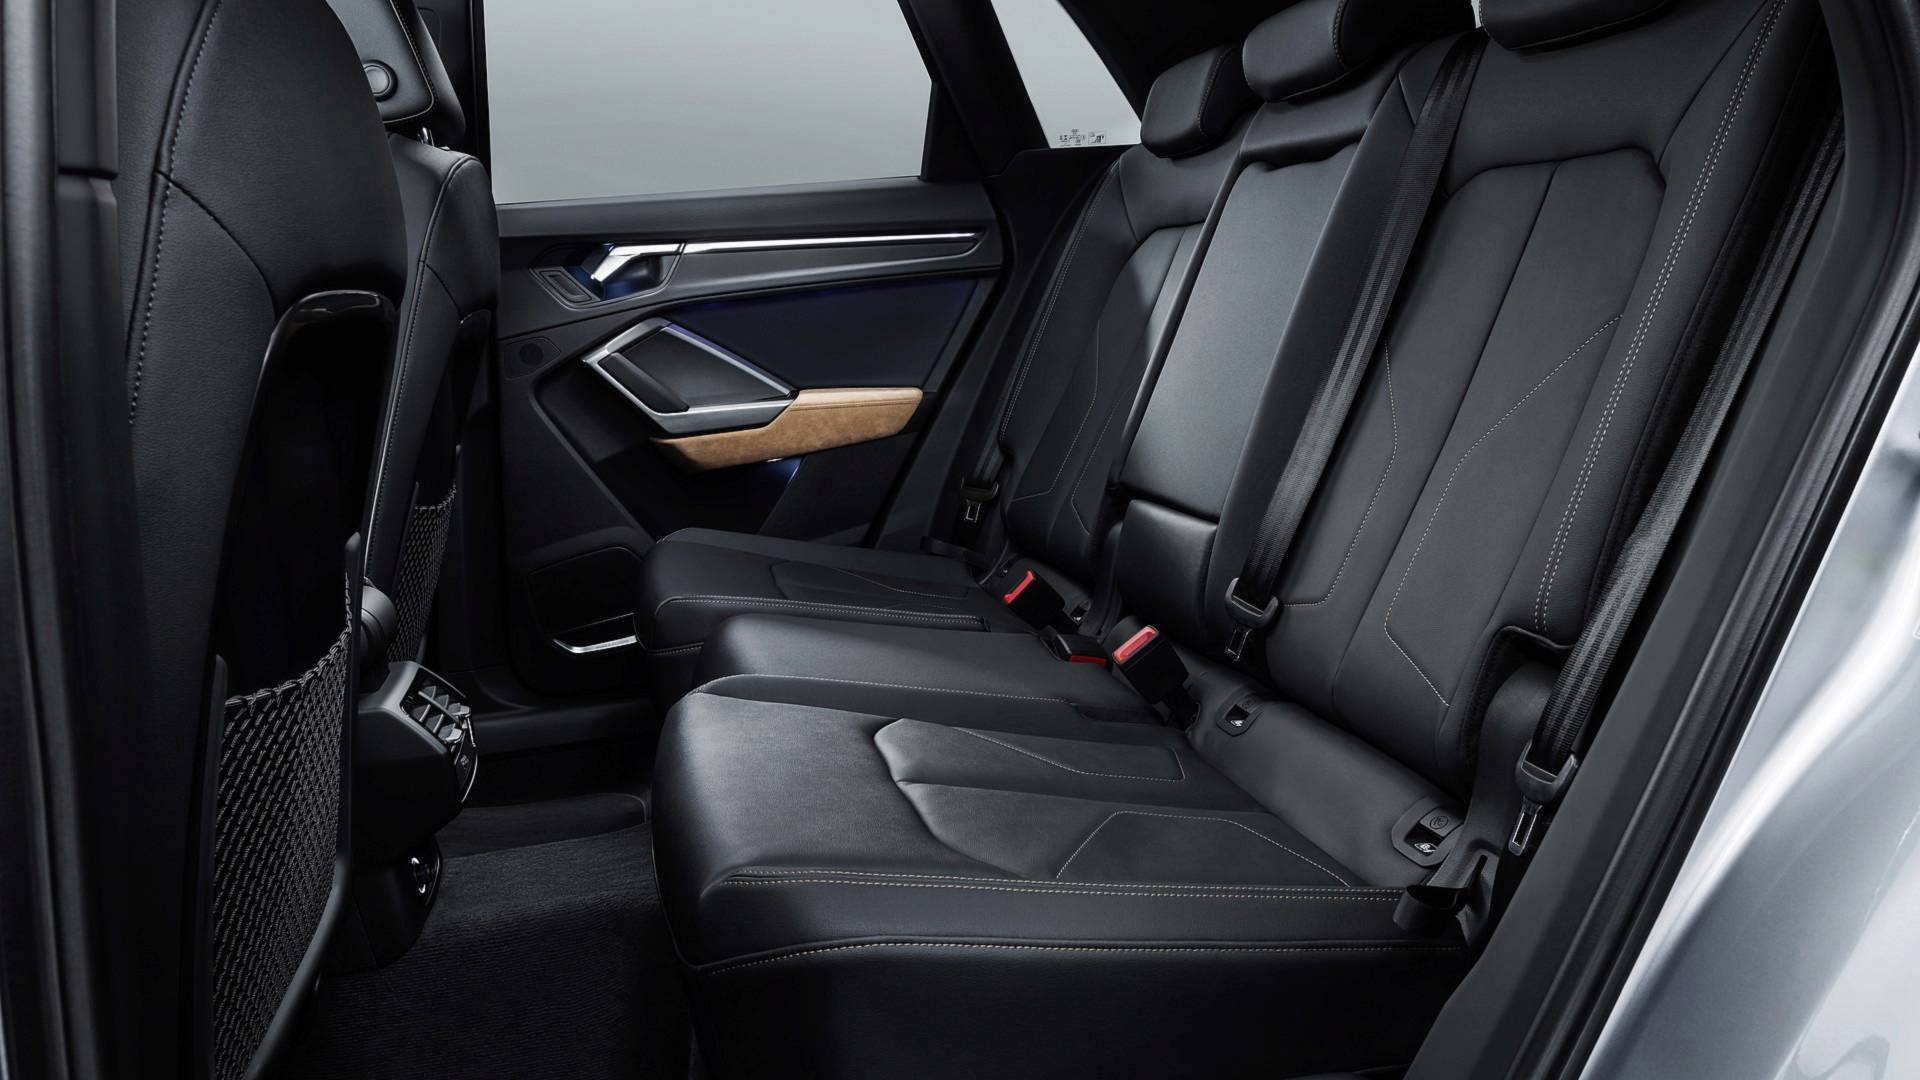 Oficial: 2019 Audi Q3, información y datos